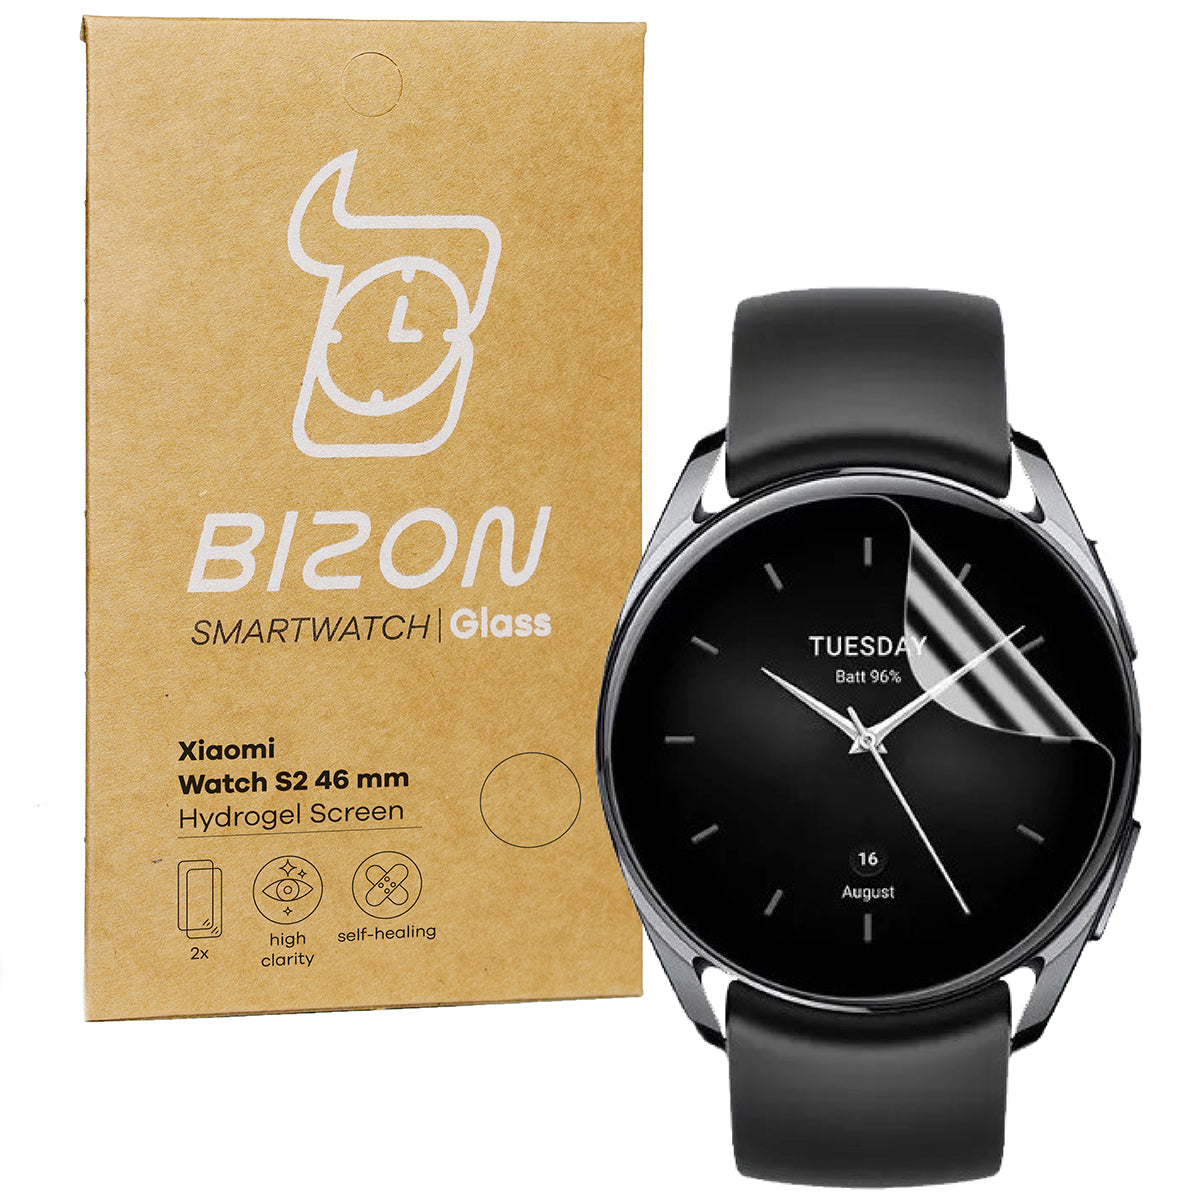 Hydrogel Folie für den Bildschirm Bizon Glass Hydrogel für Xiaomi Watch S2 46 mm, 2 Stück